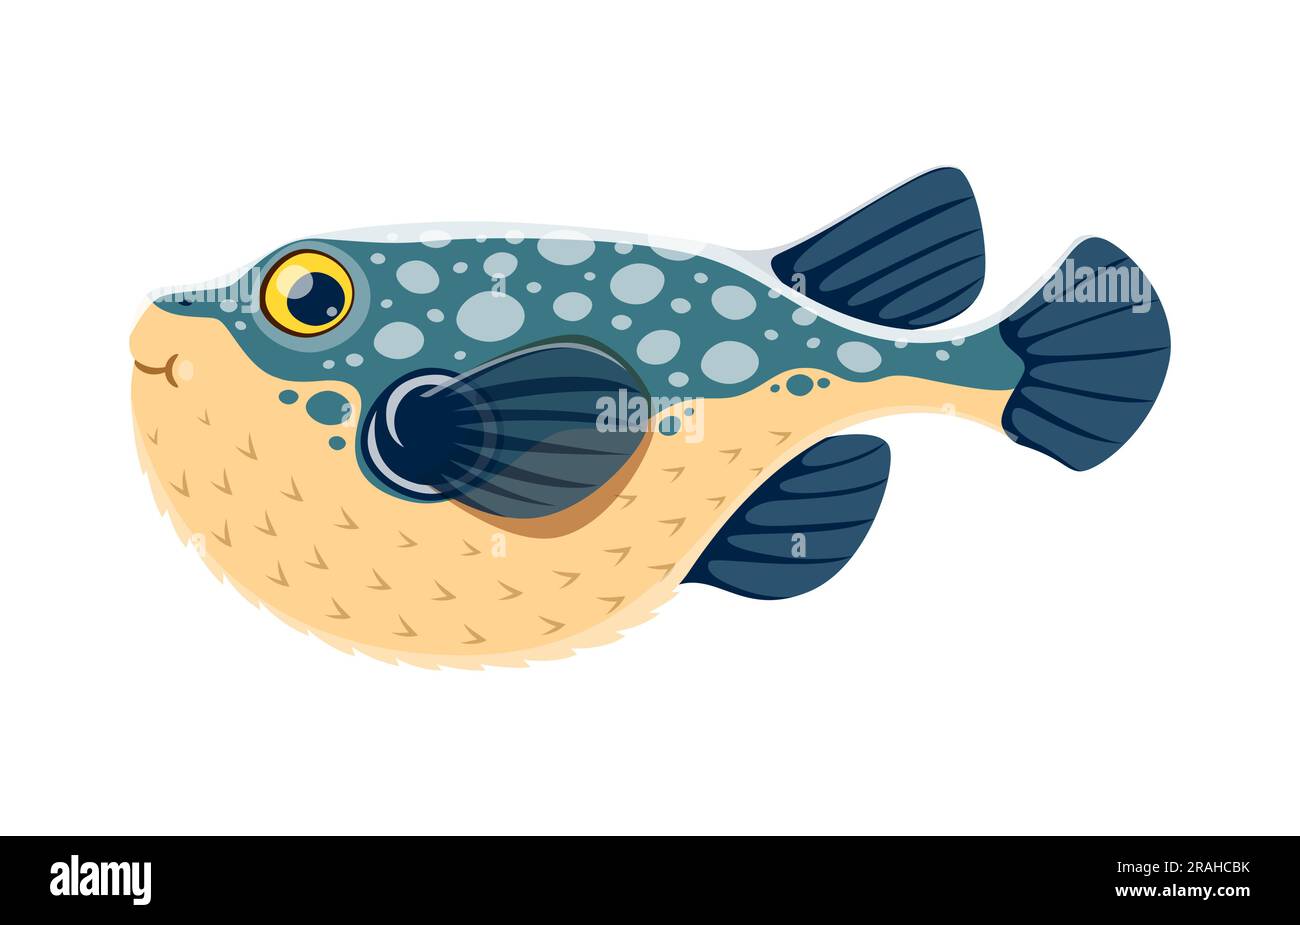 Fugu ou personnage de poisson-souffleur. Vecteur de dessin animé isolé animal marin unique connu pour leur capacité à gonfler leur corps dans une boule piquée pour la défense. Ils ont des yeux renflés et une bouche ressemblant à un bec Illustration de Vecteur